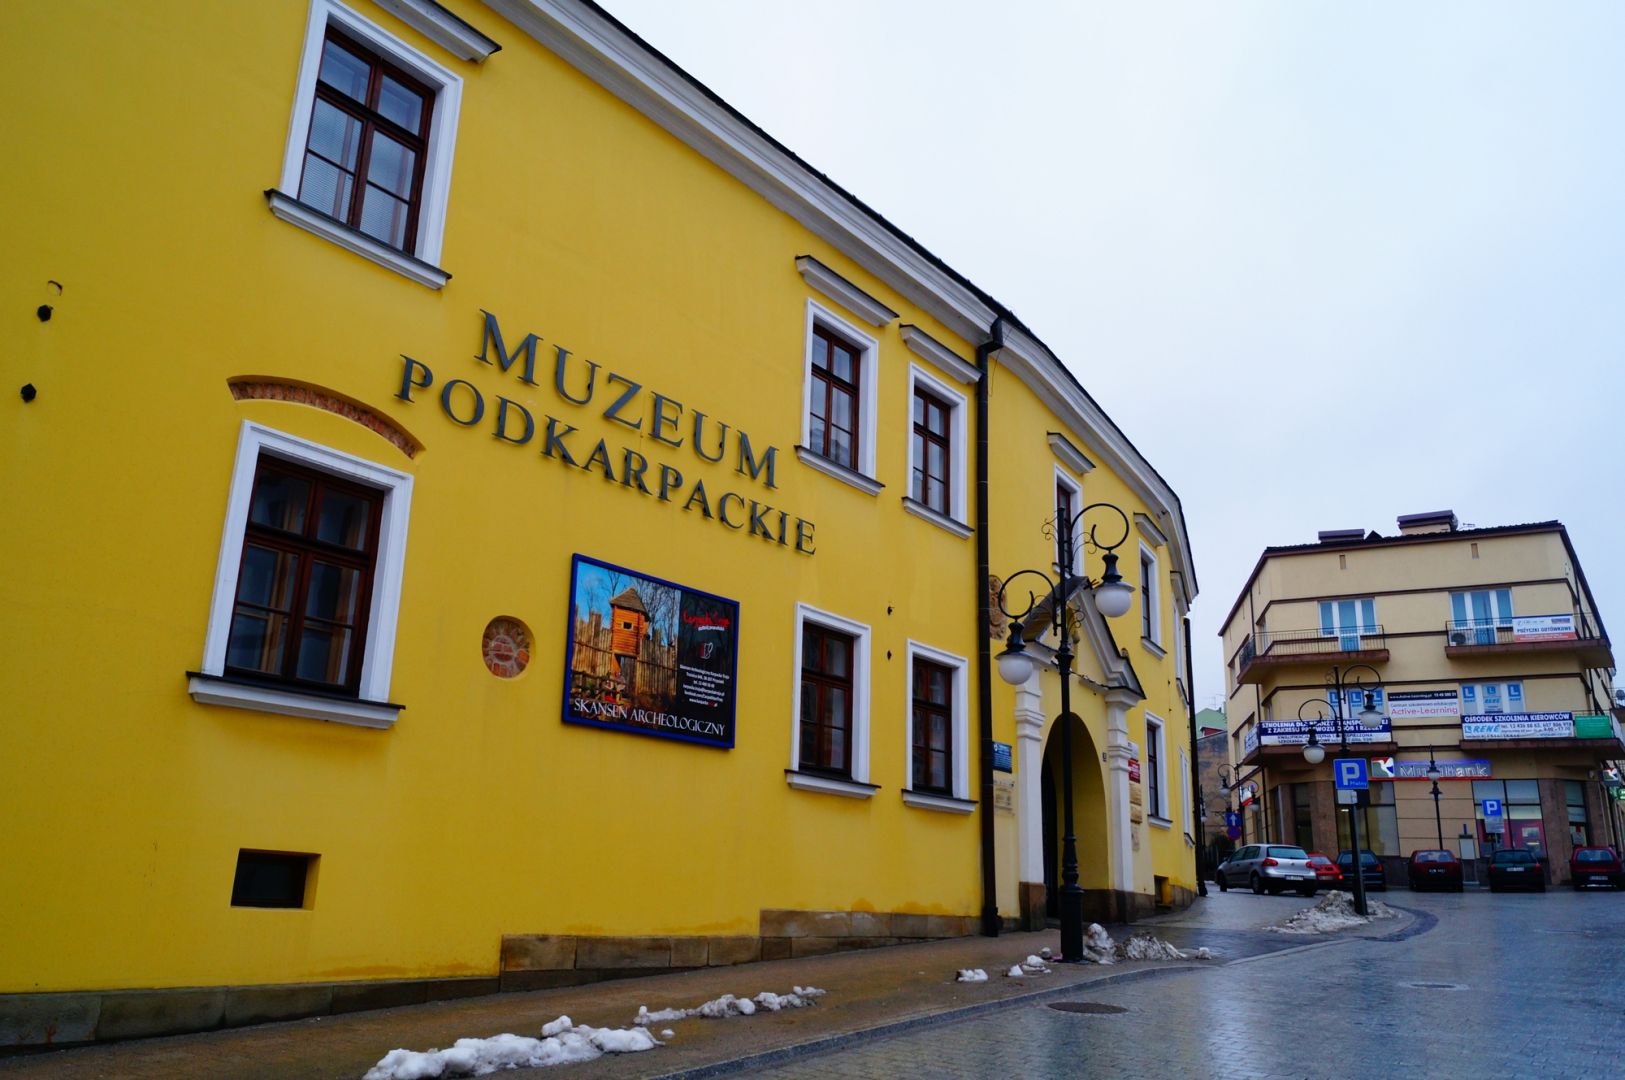 Podkarpackie Museum in Krosno